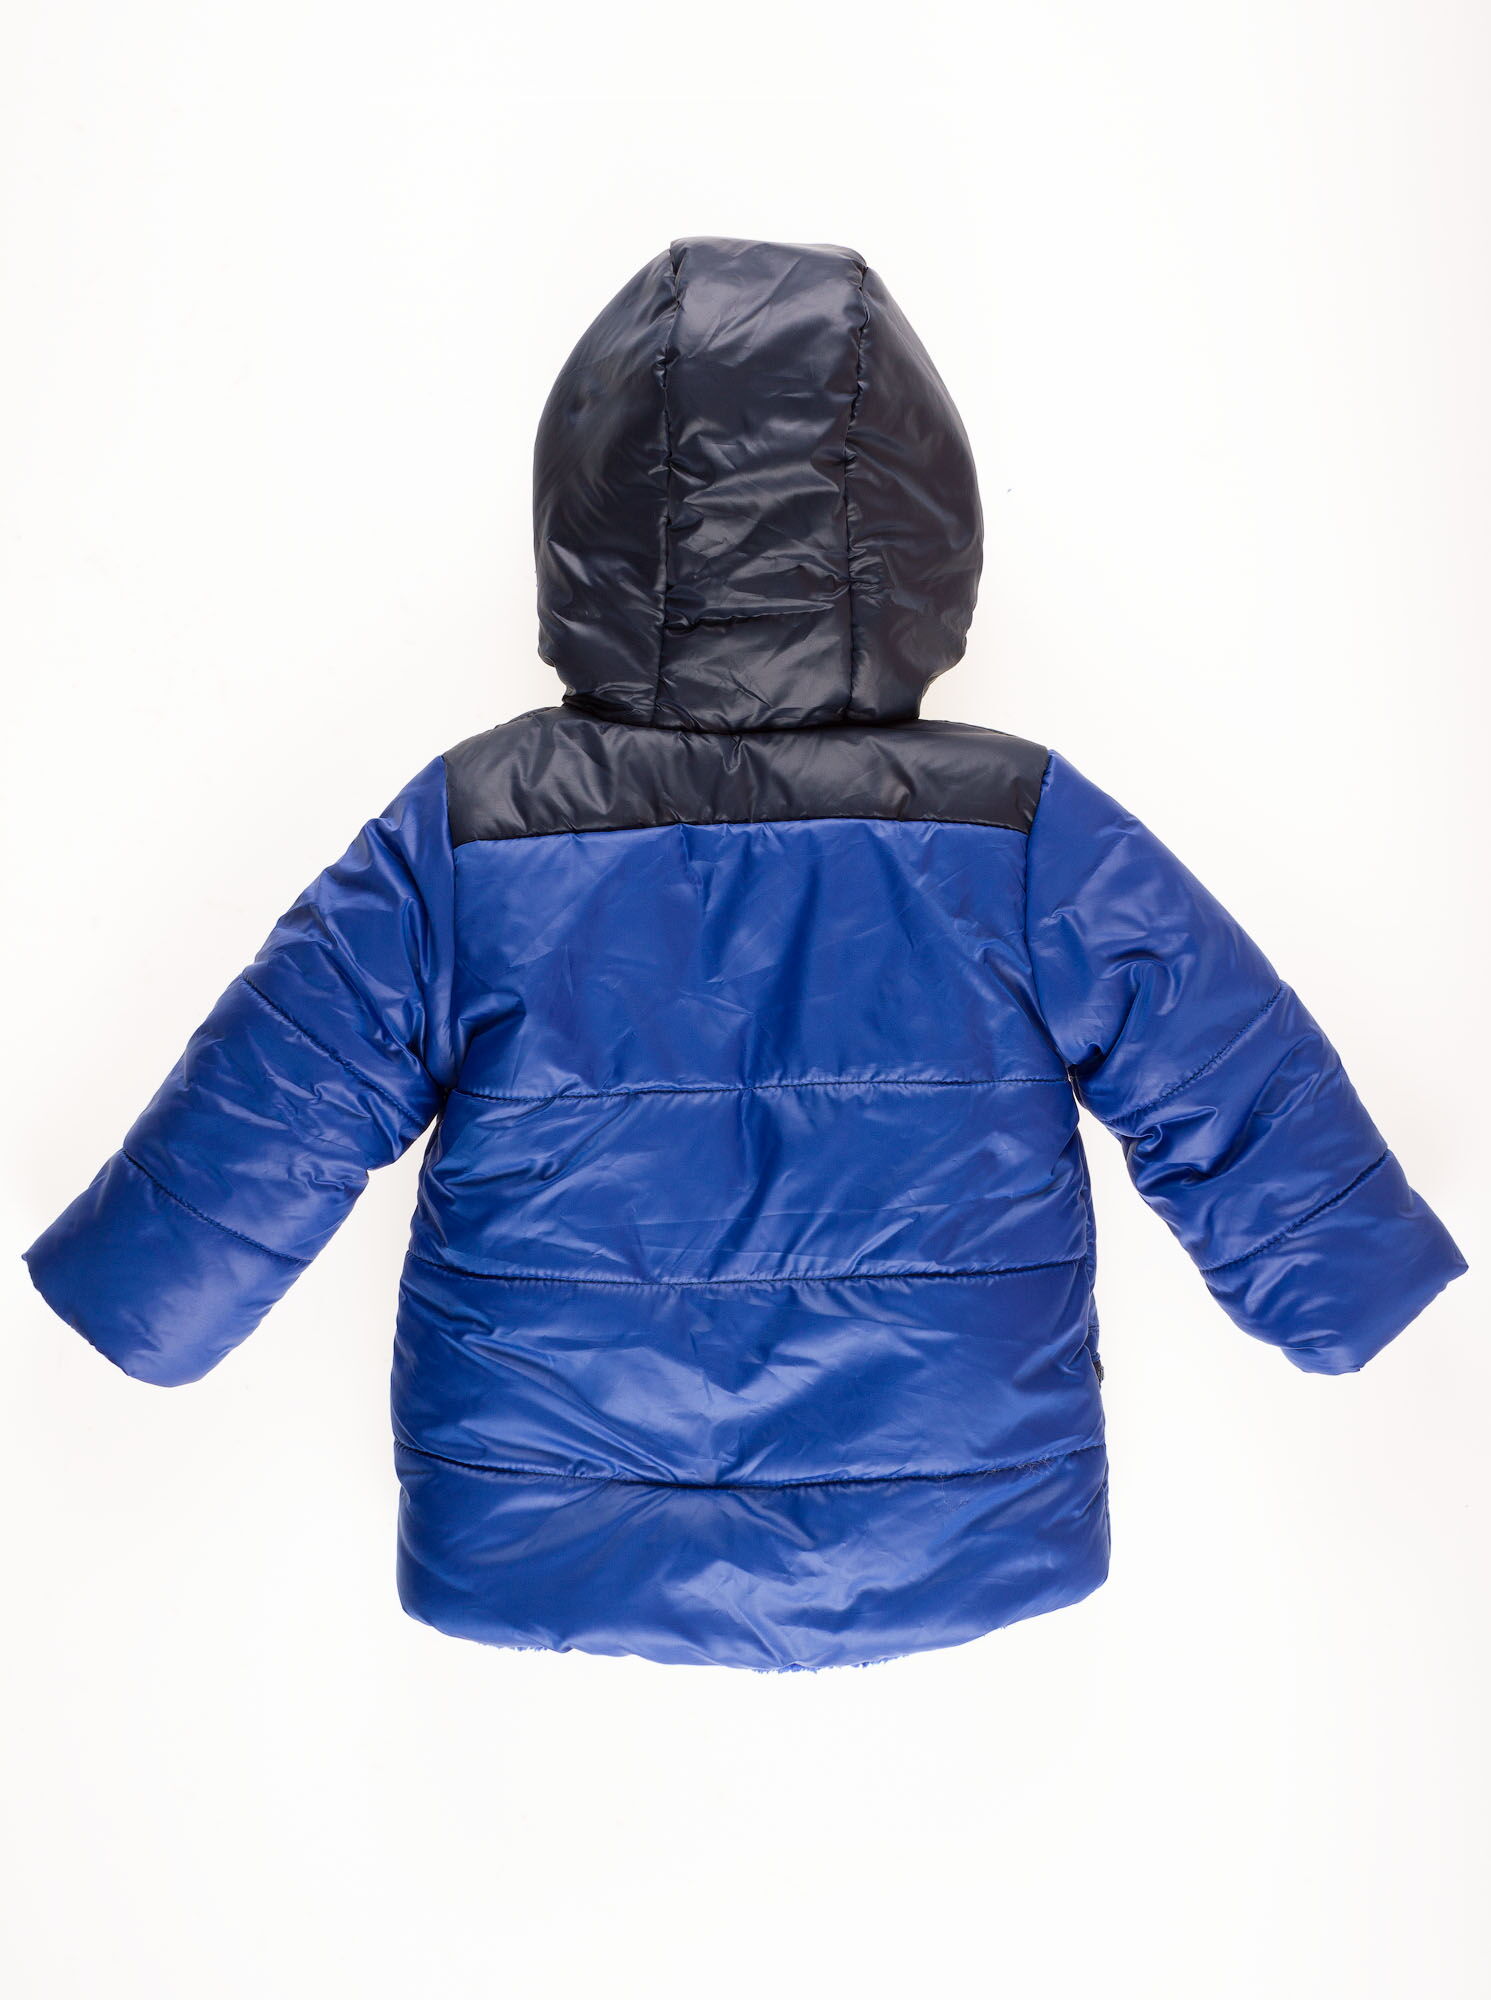 Куртка зимняя для мальчика Одягайко синий электрик 20071 - размеры